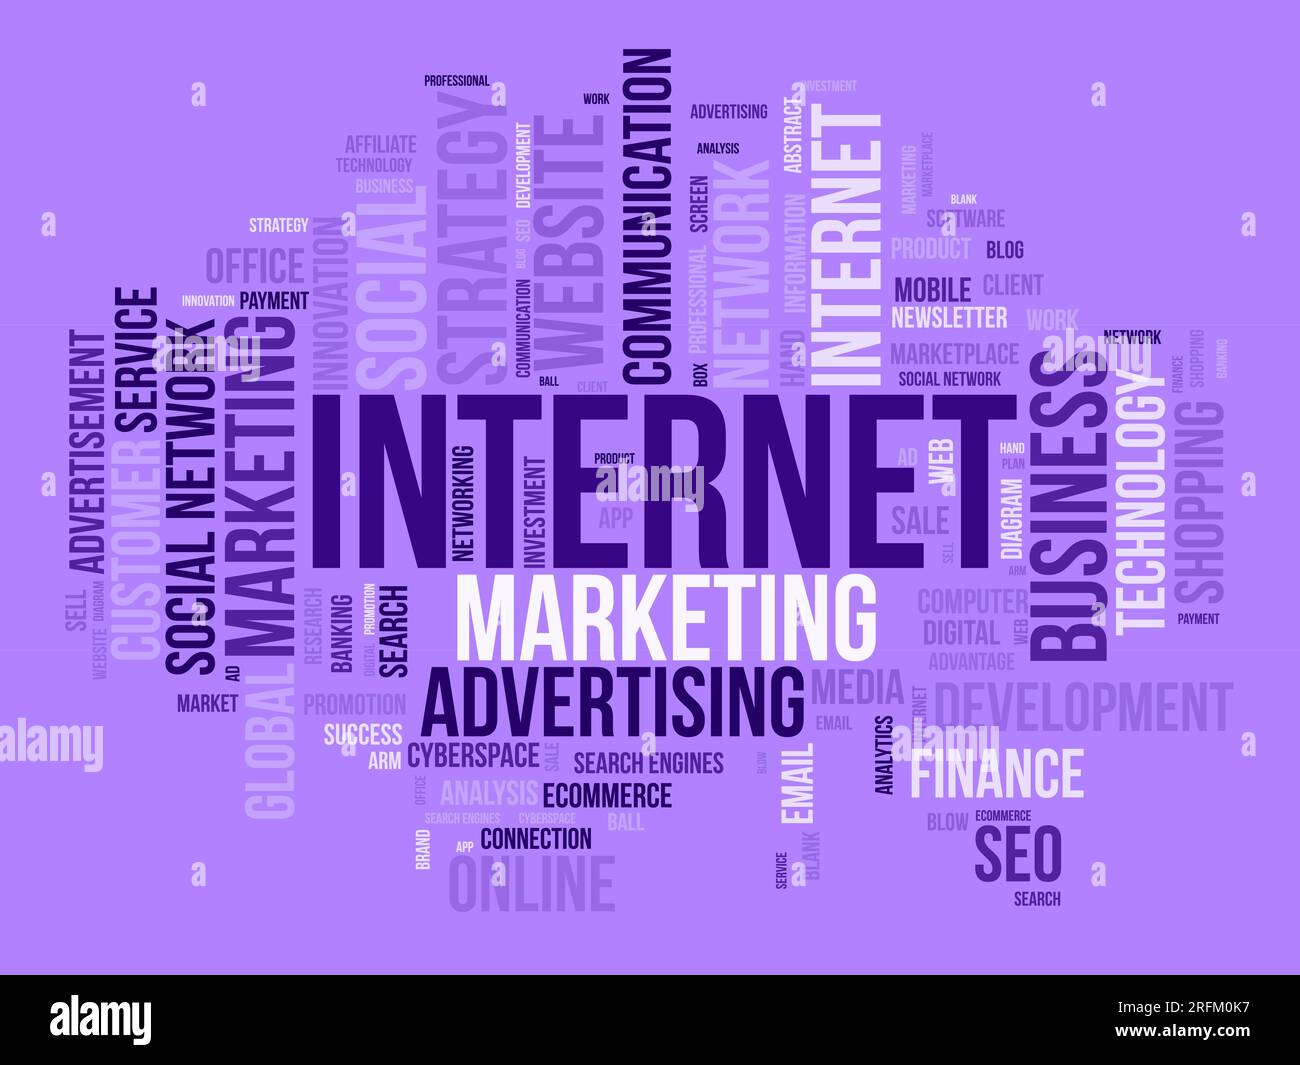 Concetto di background Word cloud per il marketing su Internet. Pubblicità Web con seo, marketing digitale e altre strategie per i media digitali. illustrati vettoriali Illustrazione Vettoriale